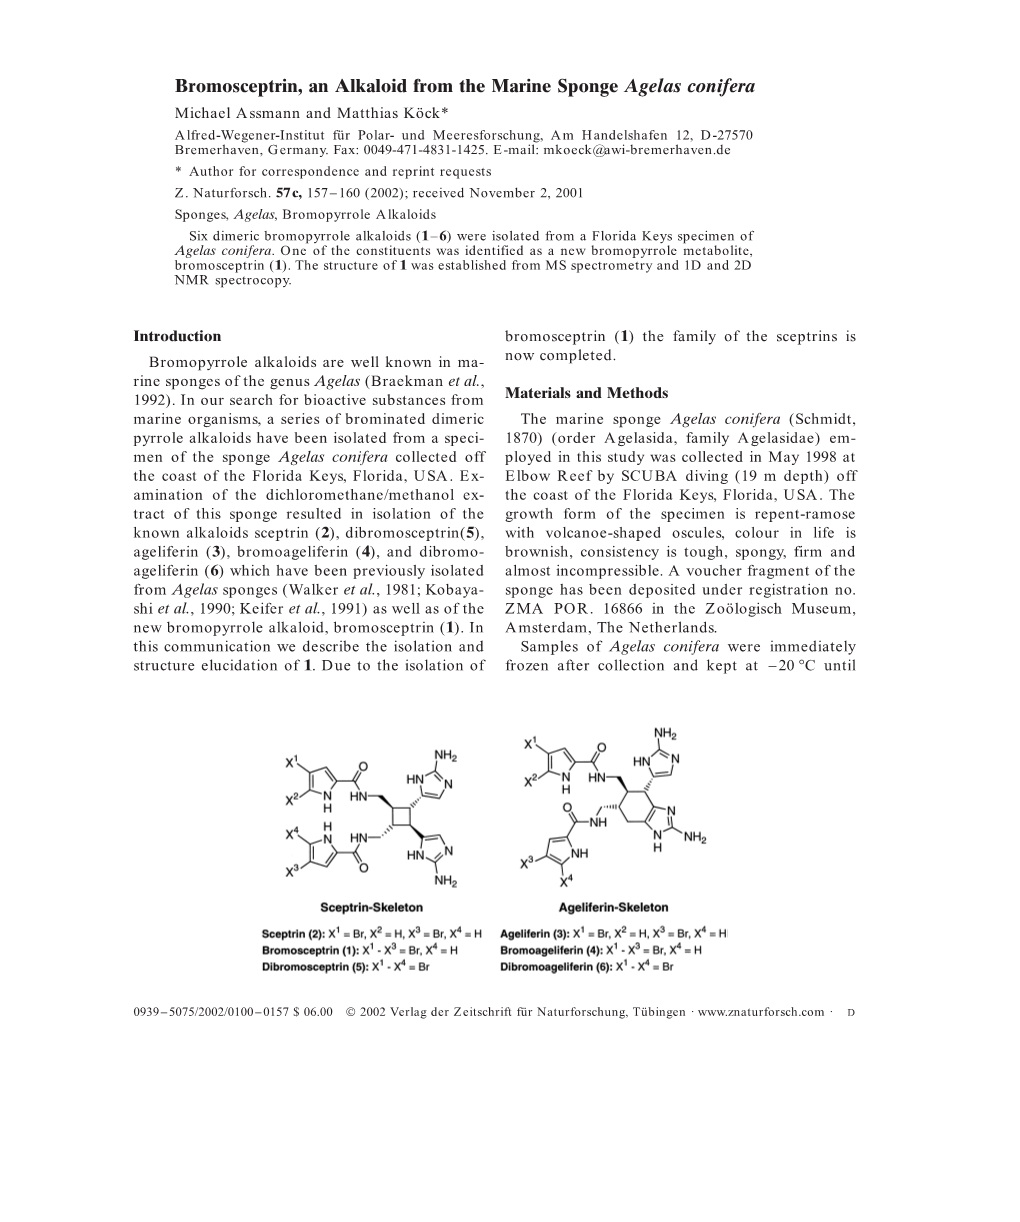 Bromosceptrin, an Alkaloid from the Marine Sponge Agelas